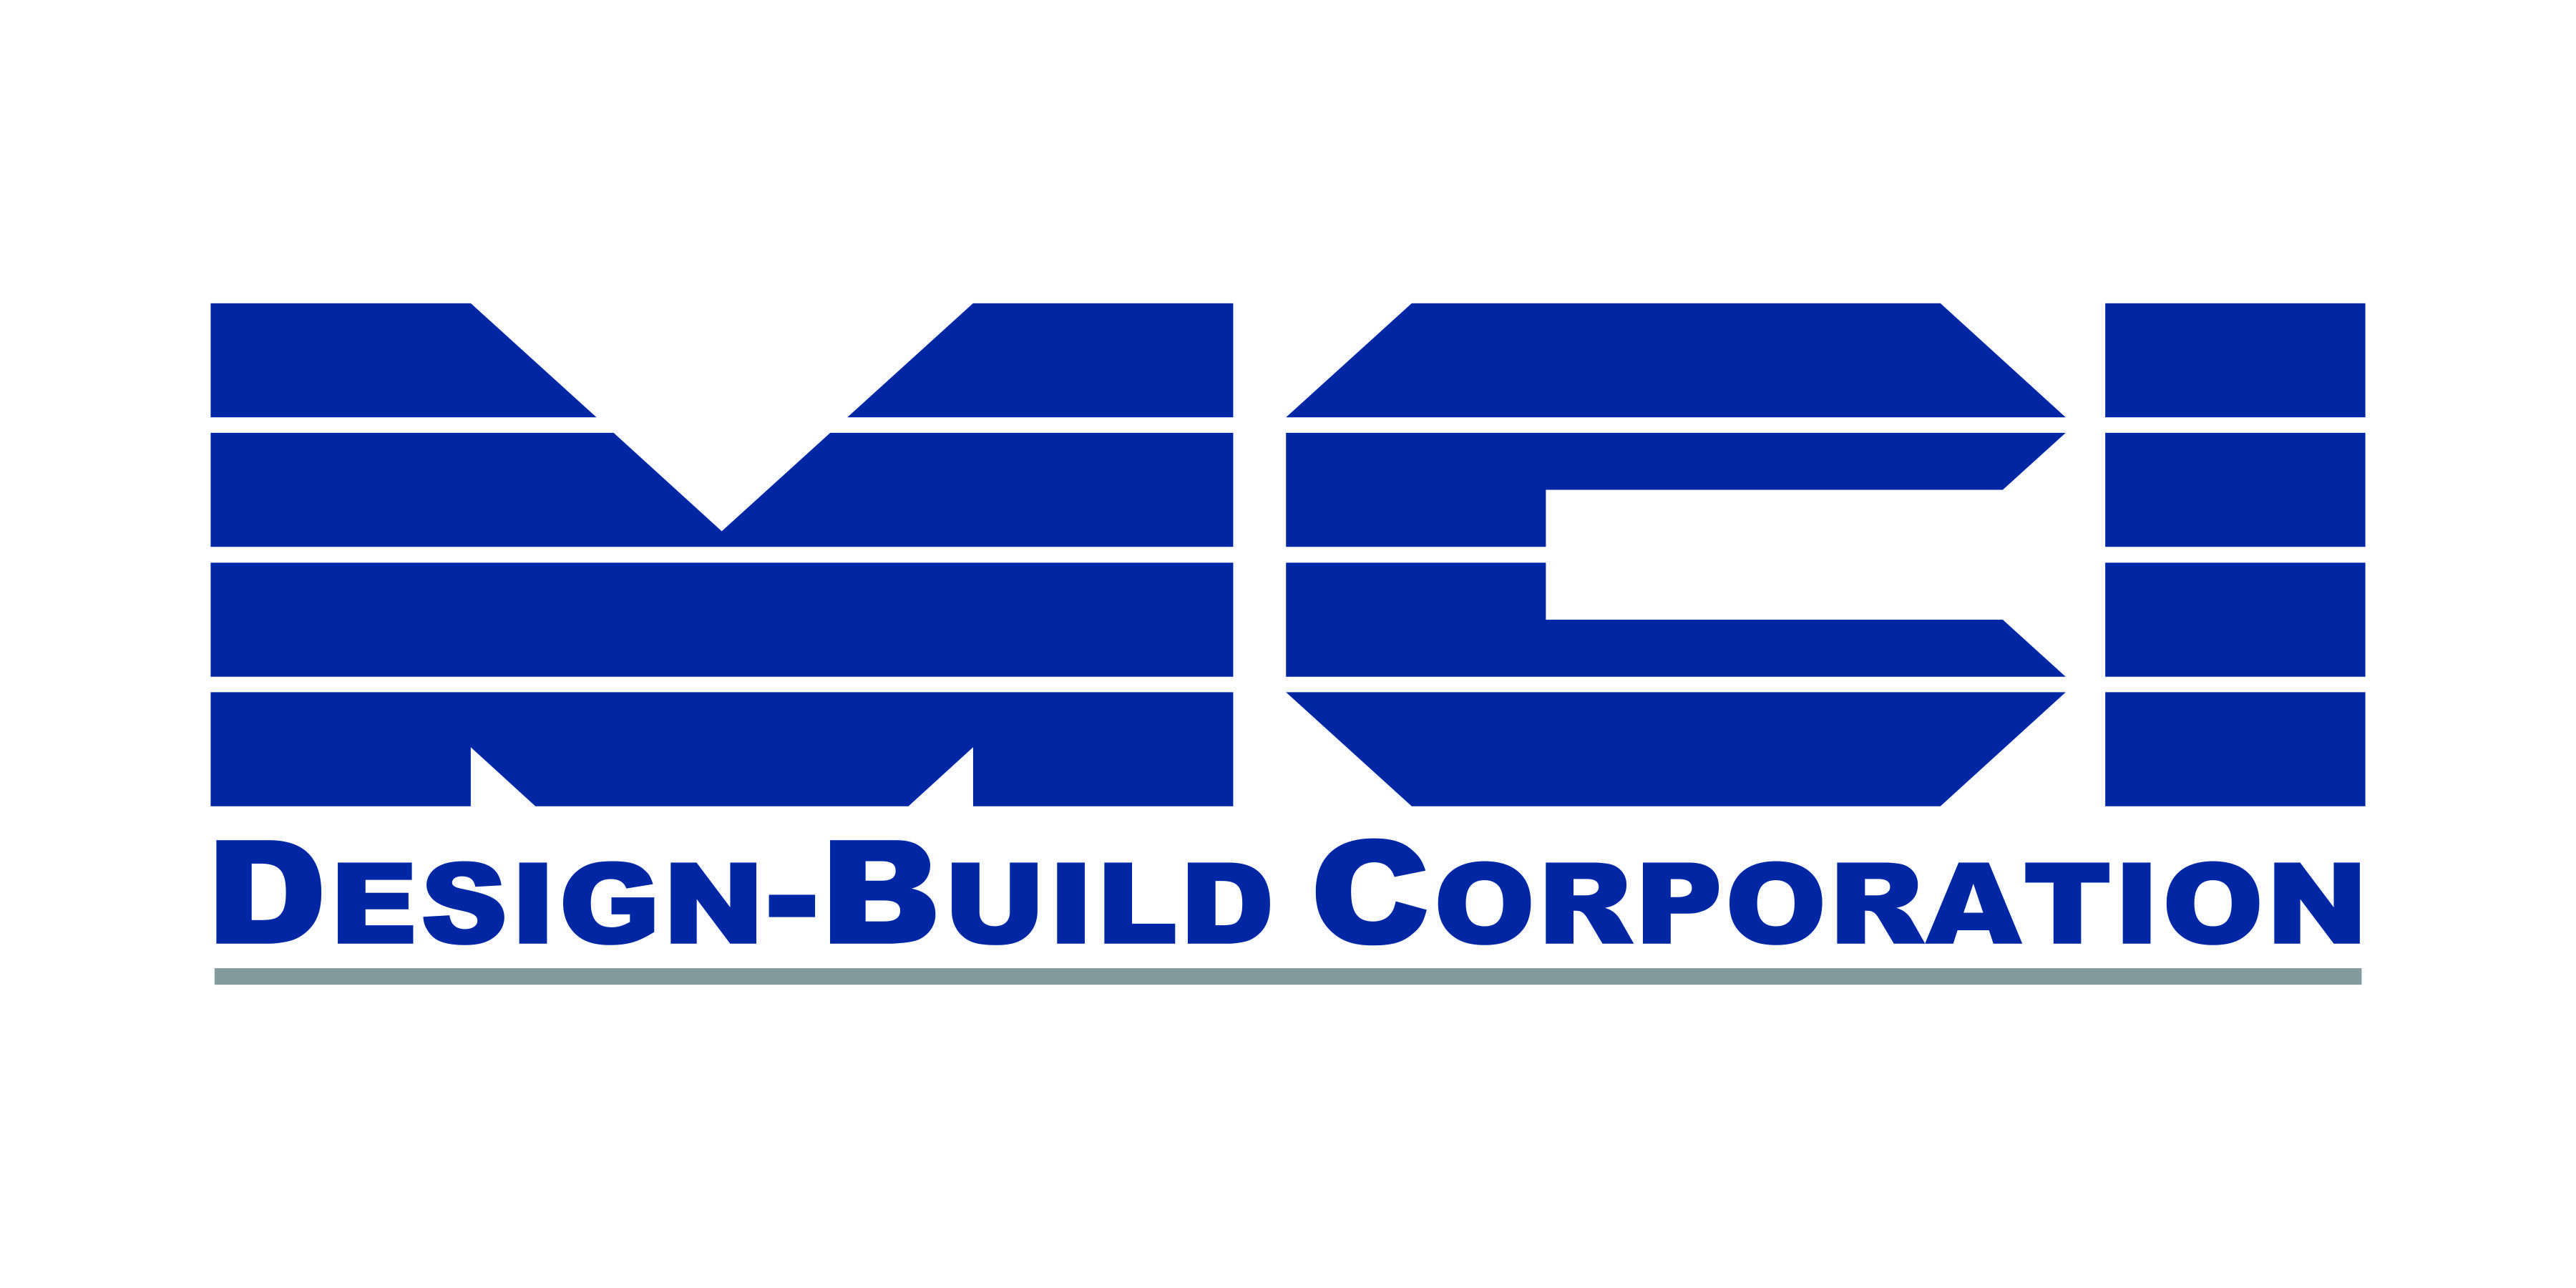 MCI Design-Build Corporation